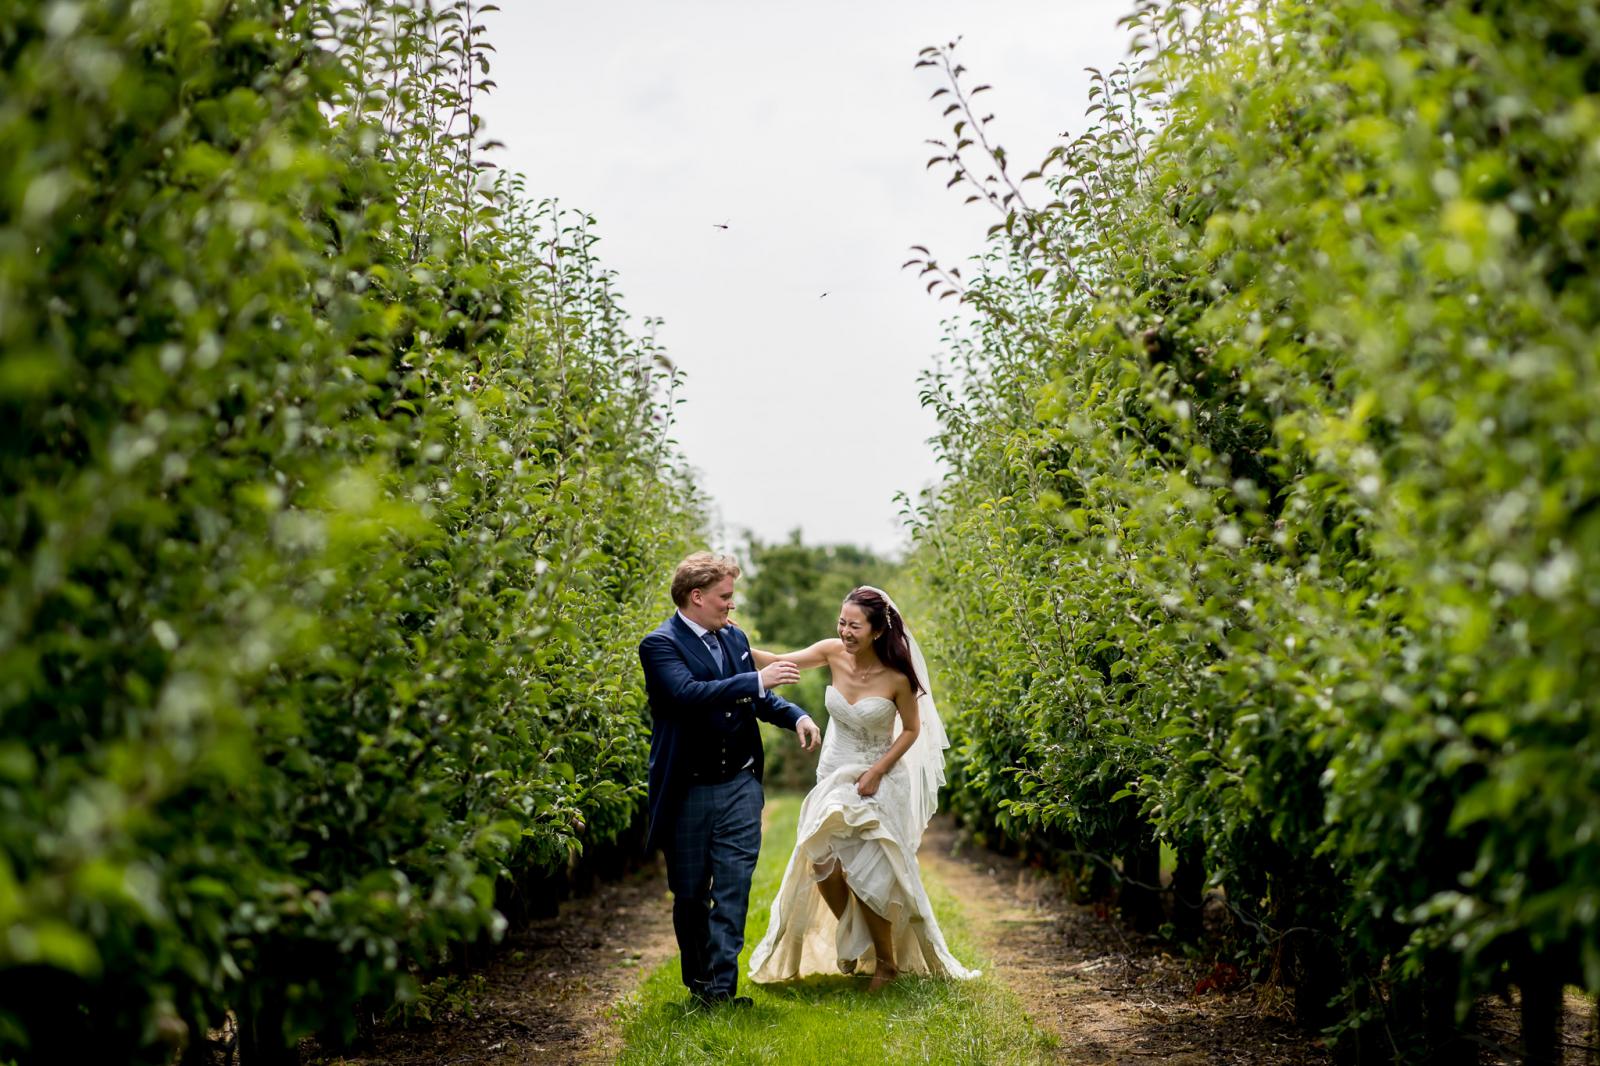 Bruidspaar rent samen door boomgaard tijdens fotoshoot kasteel wijenburg echteld 